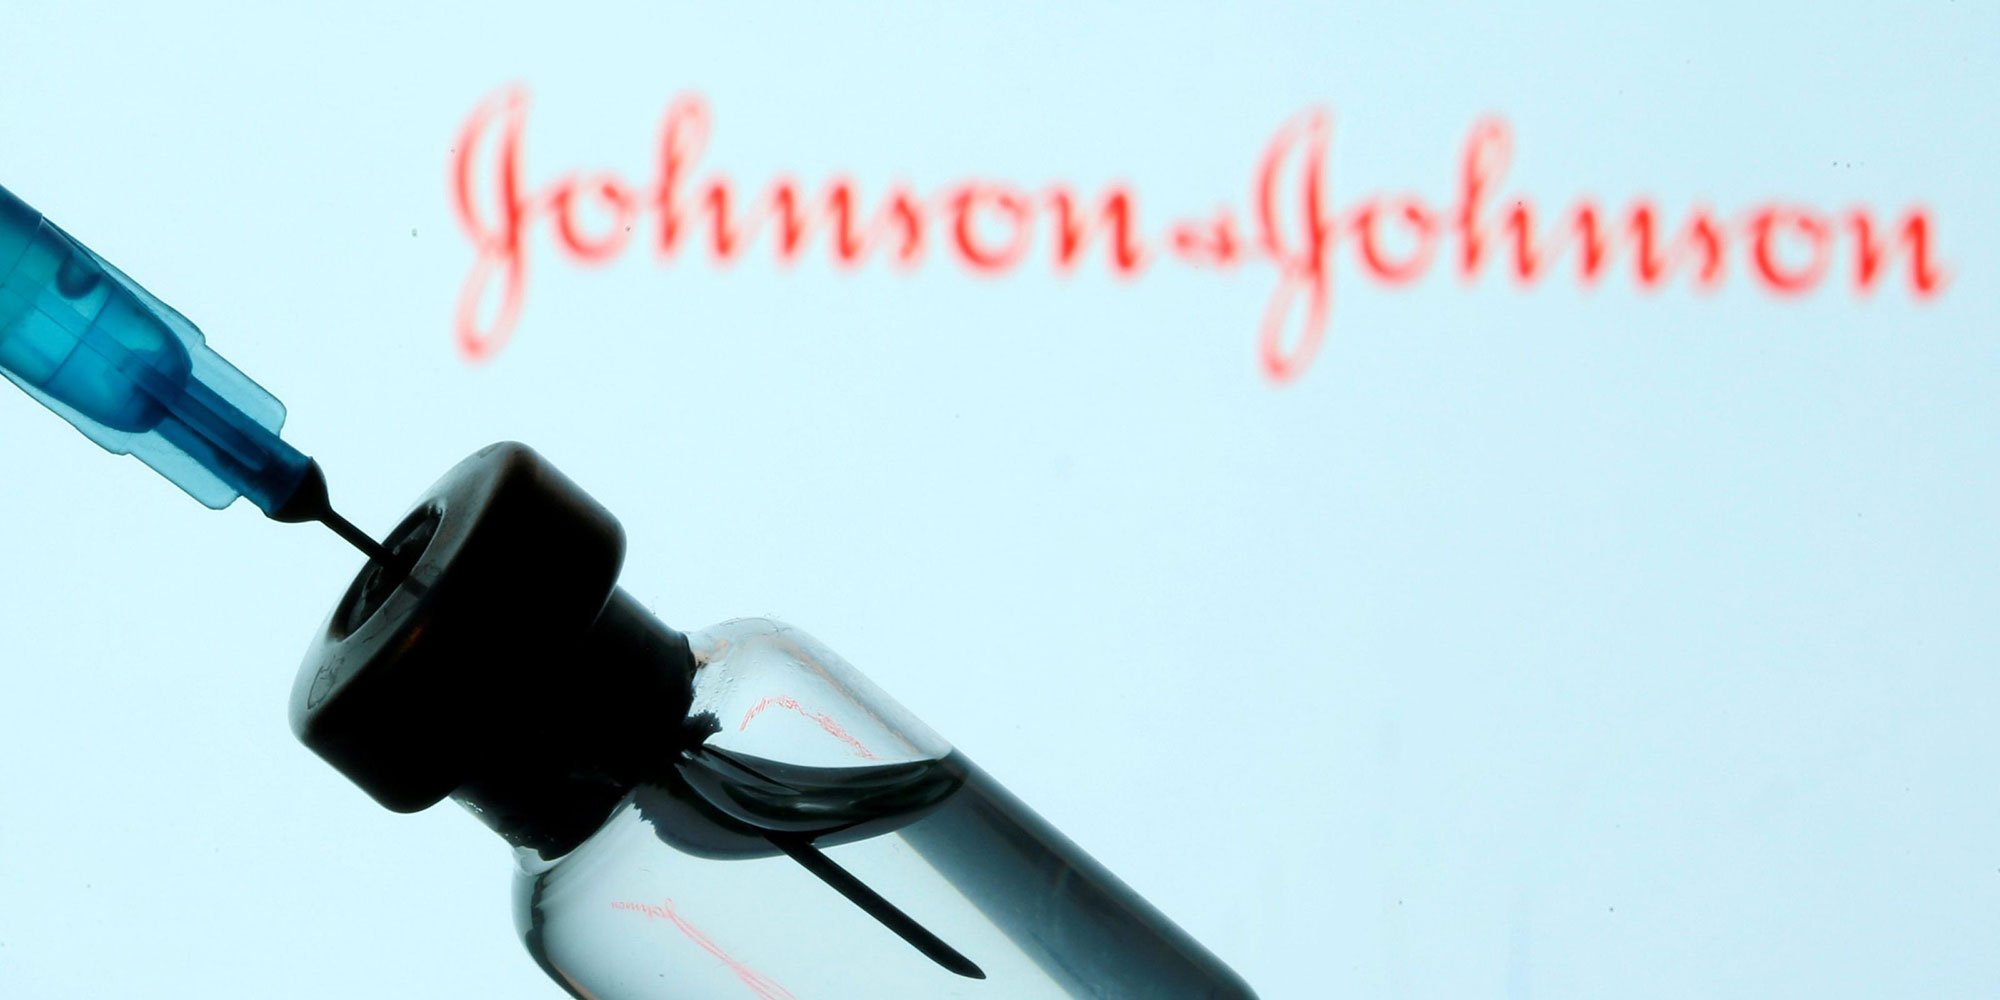 Cerere slabă pentru vaccinul anti-Covid Johnson & Johnson